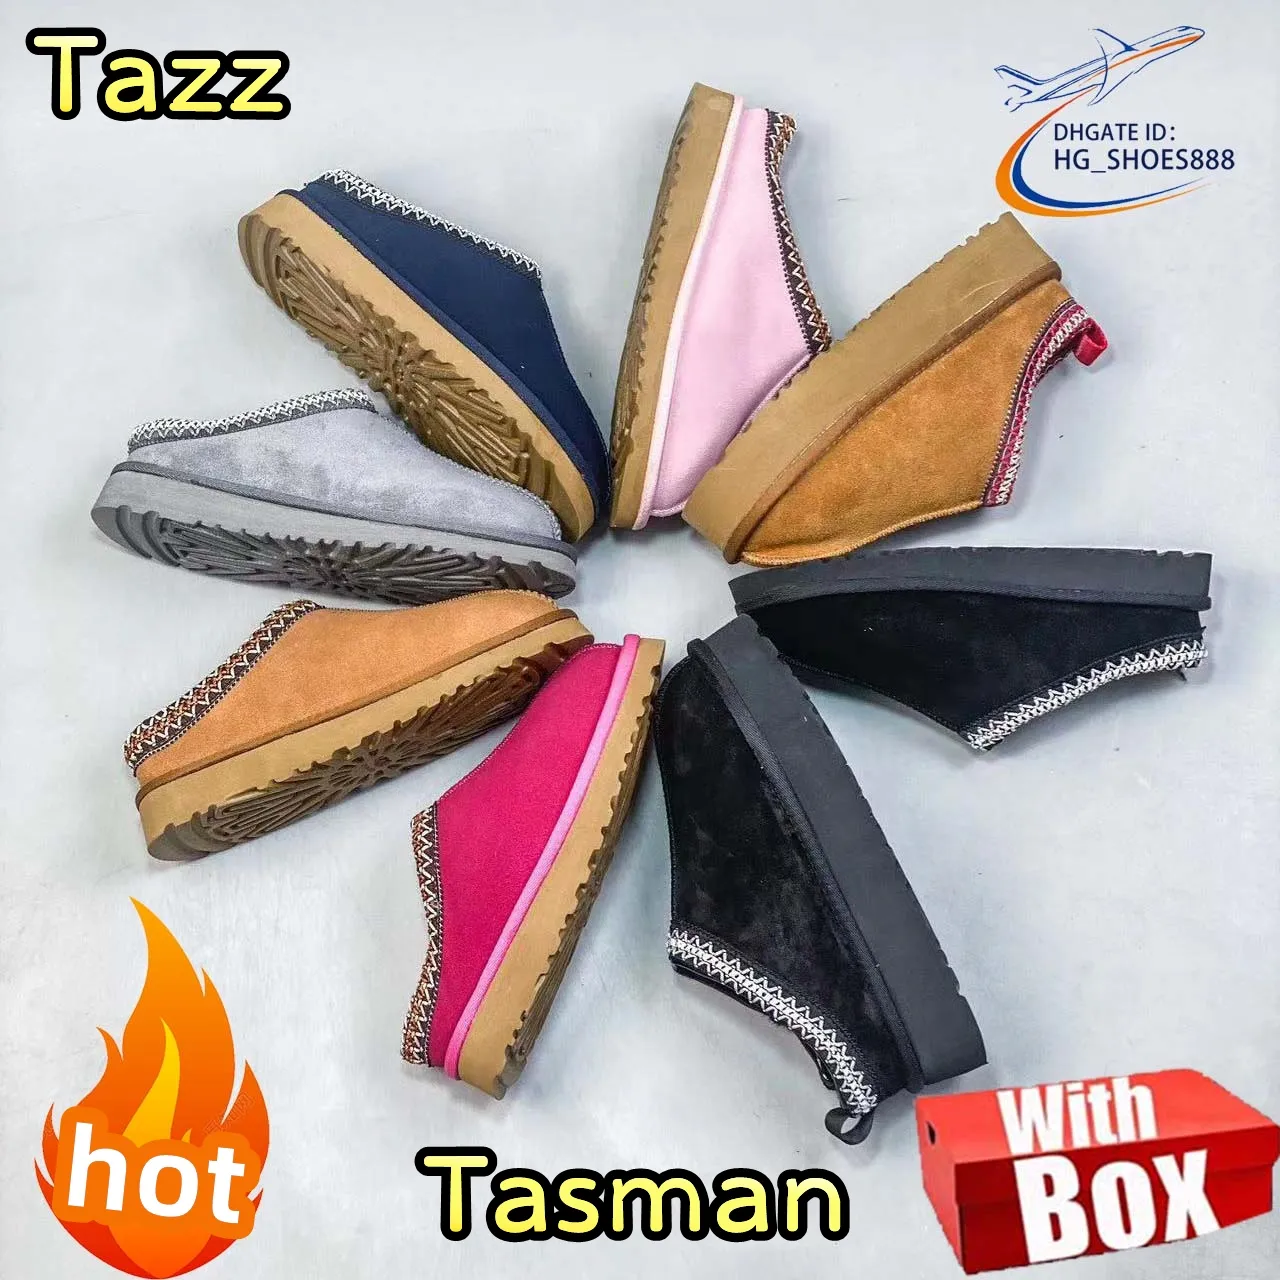 مع Box Tasman Boots Ug Boots Chesut Designer for Women Tazz Nasual Boots Womens with Wool Sheepton Boots Snow Boots Winter Warm Slippers Mini Mini Mini Australia